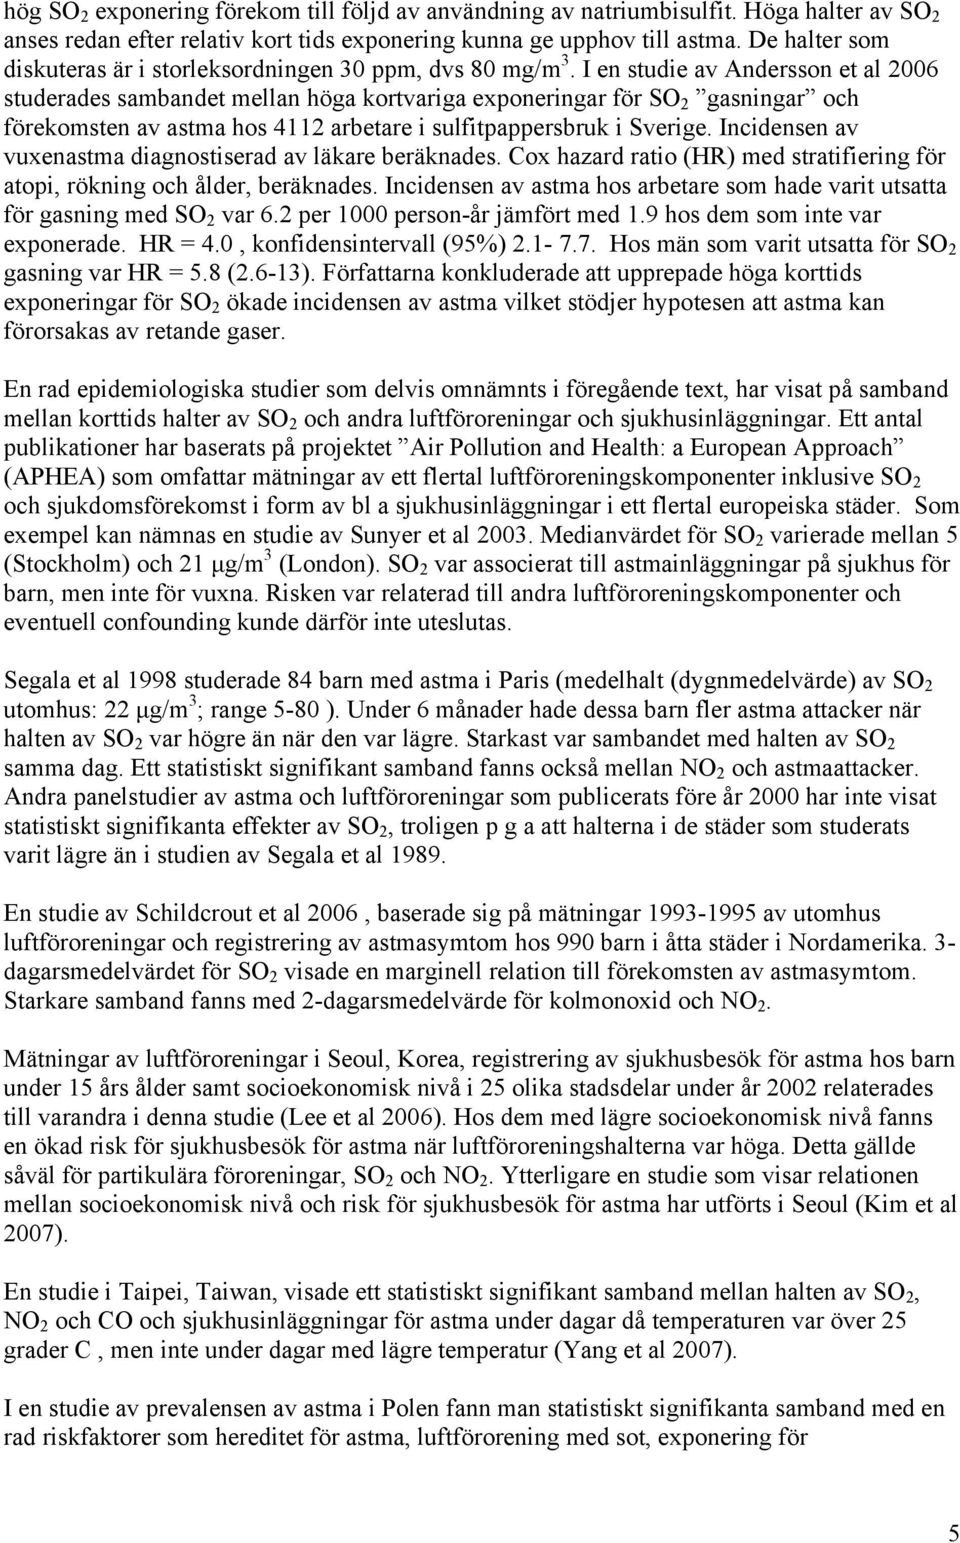 I en studie av Andersson et al 2006 studerades sambandet mellan höga kortvariga exponeringar för SO 2 gasningar och förekomsten av astma hos 4112 arbetare i sulfitpappersbruk i Sverige.